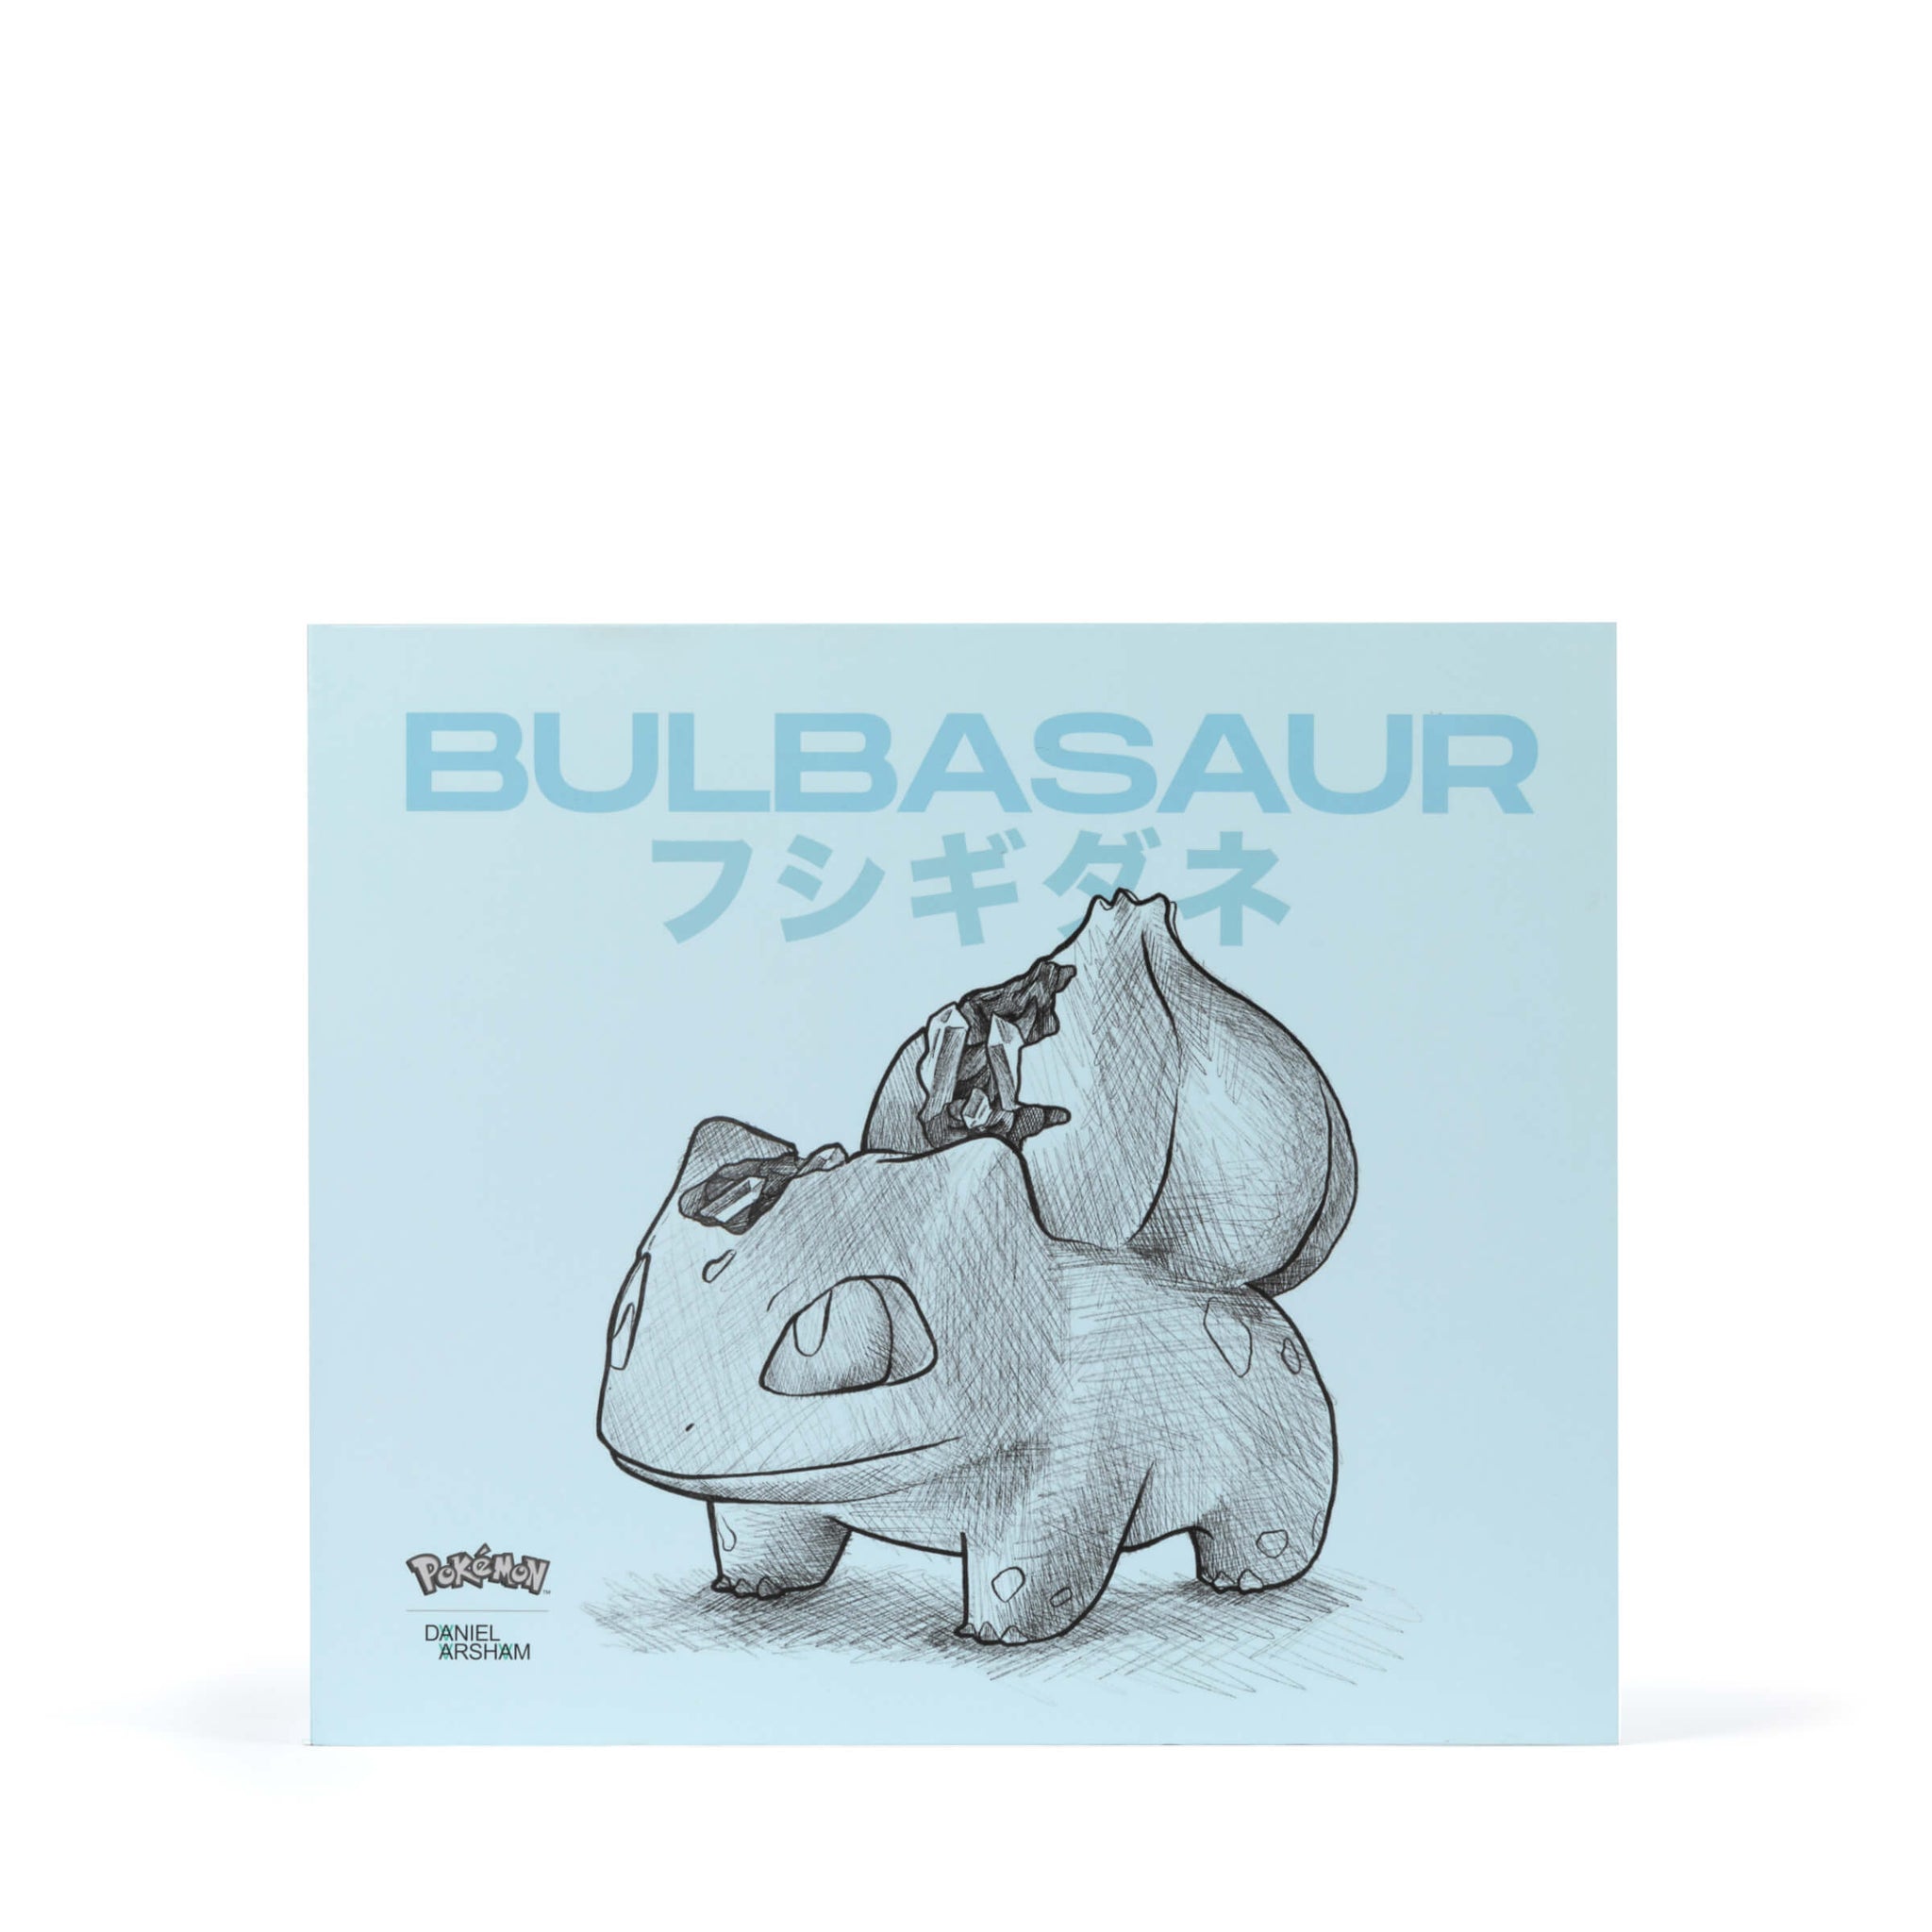 Crystalized Bulbasaur